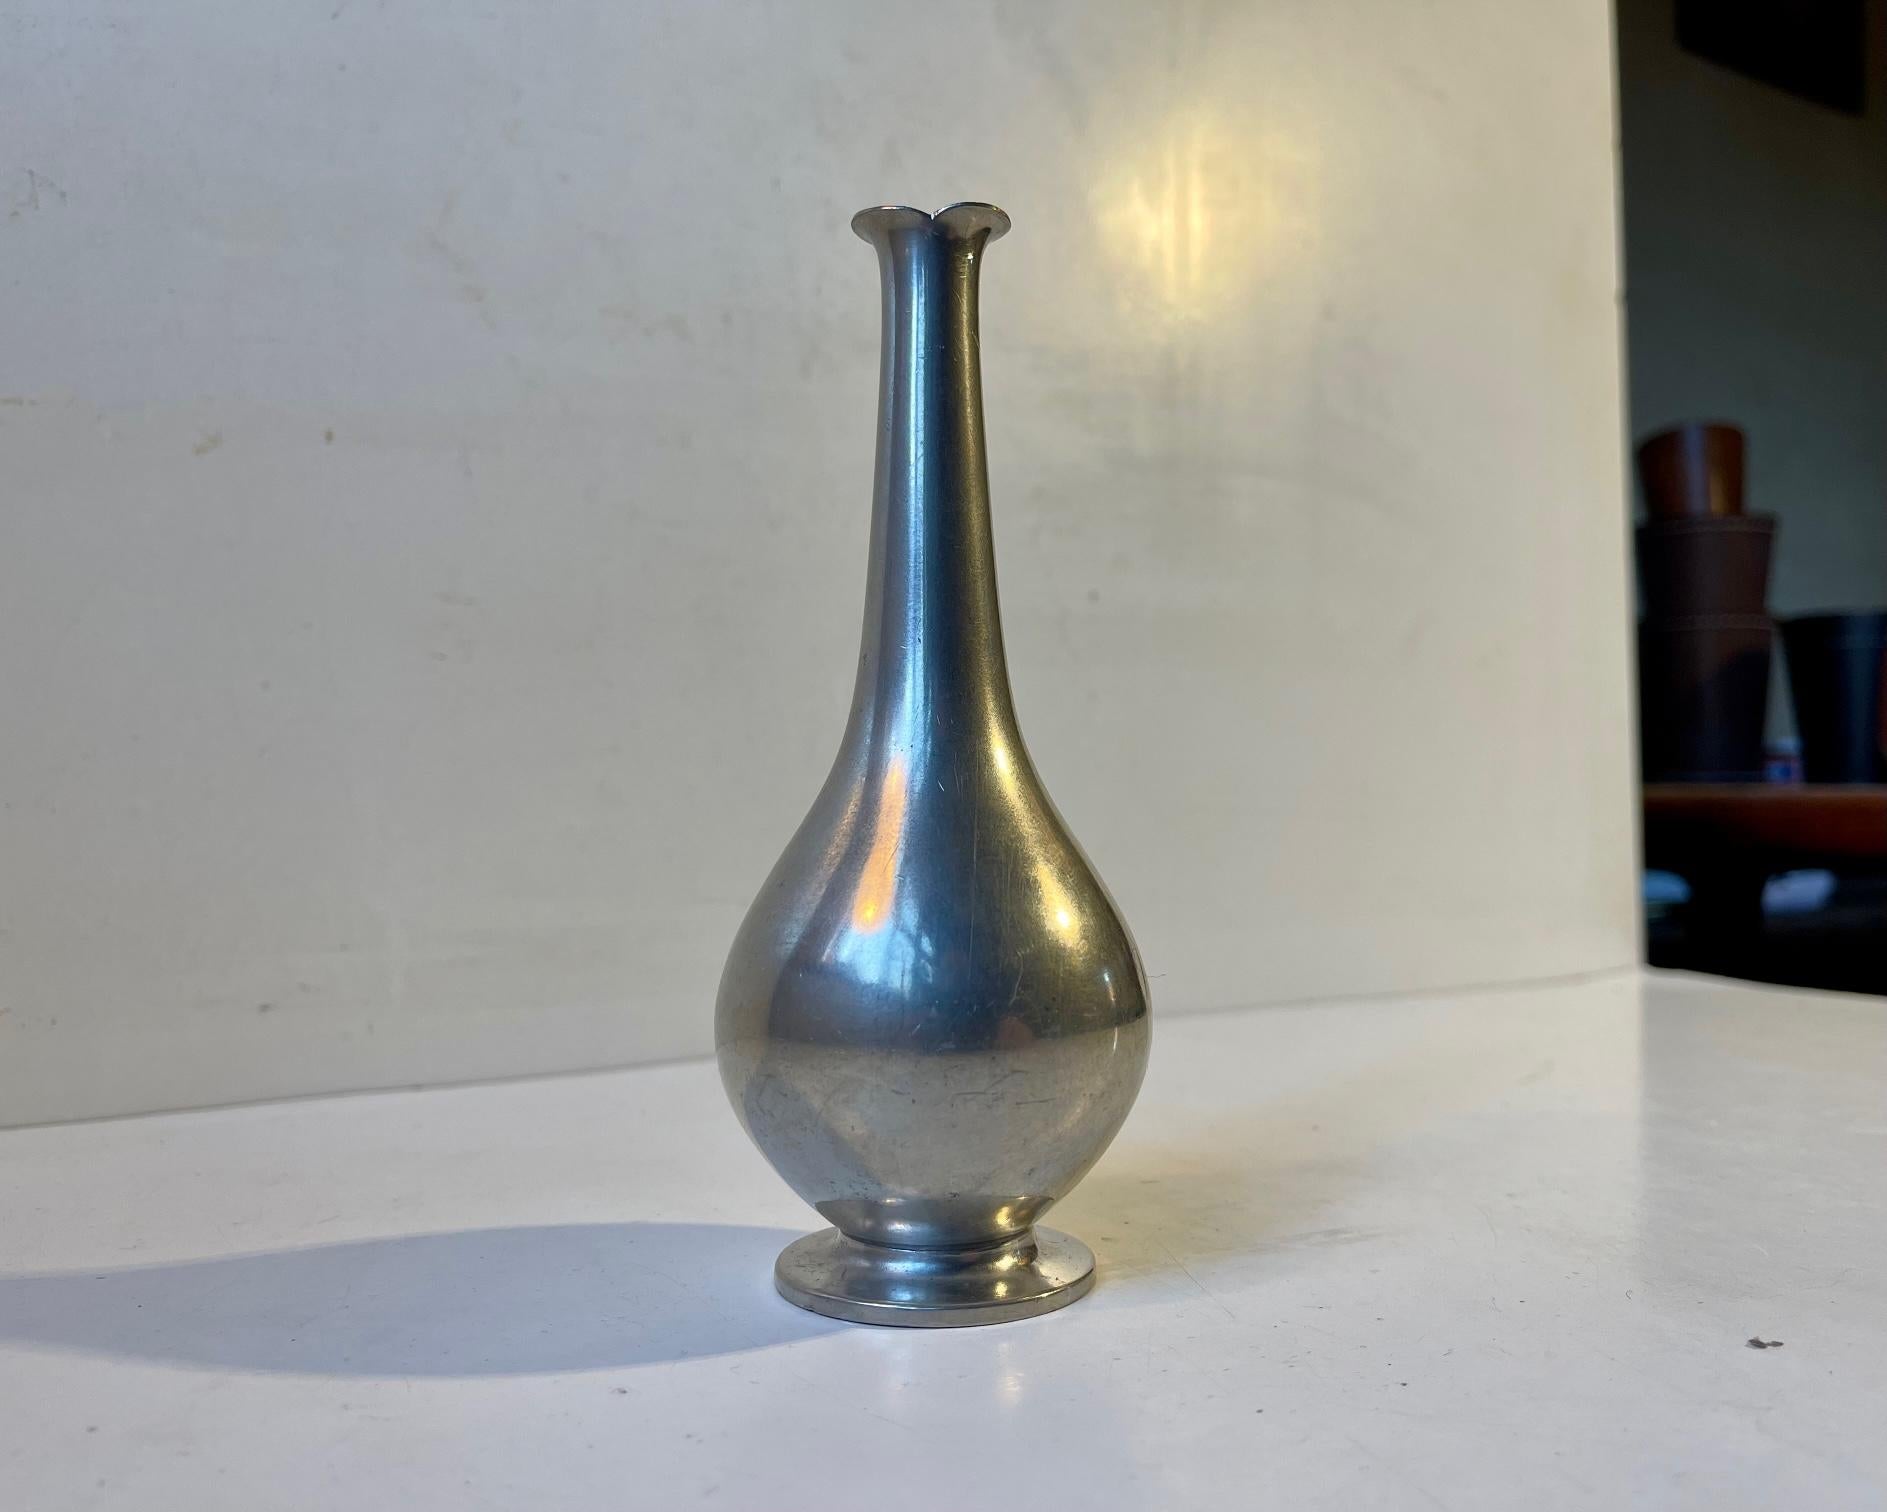 Un petit vase en étain avec un long col. Conçu et fabriqué par Just Andersen au Danemark dans les années 1930. Imprimé à sa base : Just, Danmark, 1157. Dimensions : H : 14,5 cm, L/D : 5,5 cm.